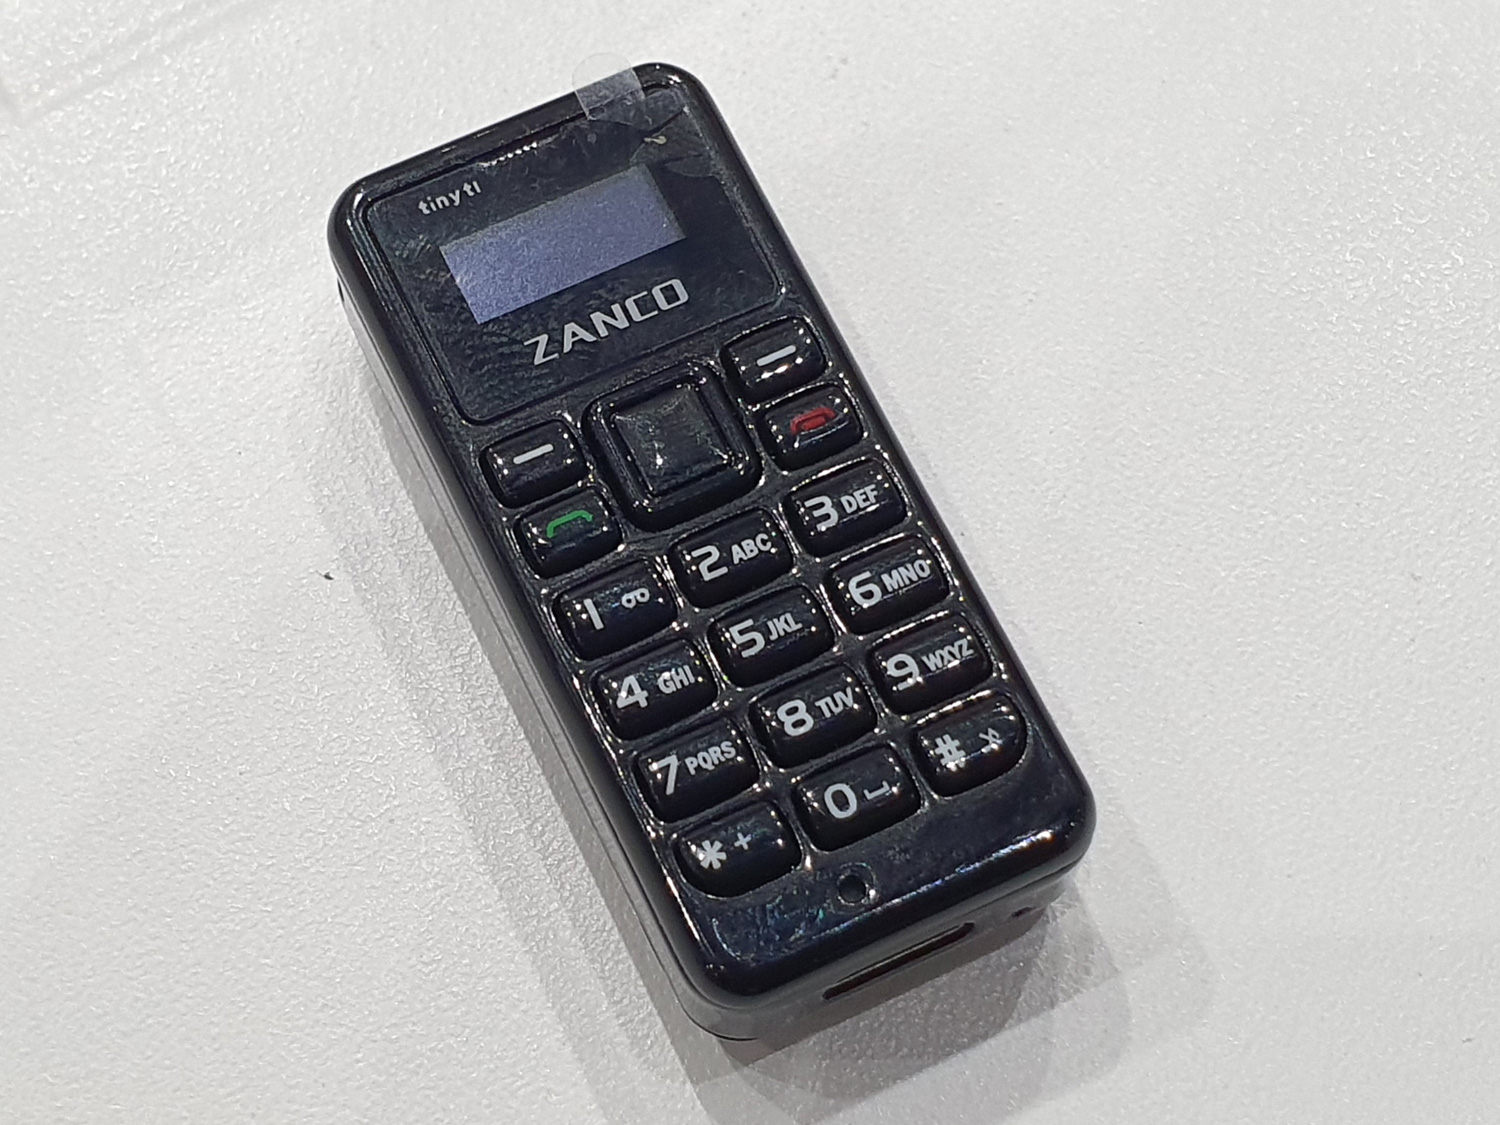 親指サイズの携帯電話 世界最小ケータイ Tiny T1 の実機を触ってみた Mwc19la Engadget 日本版